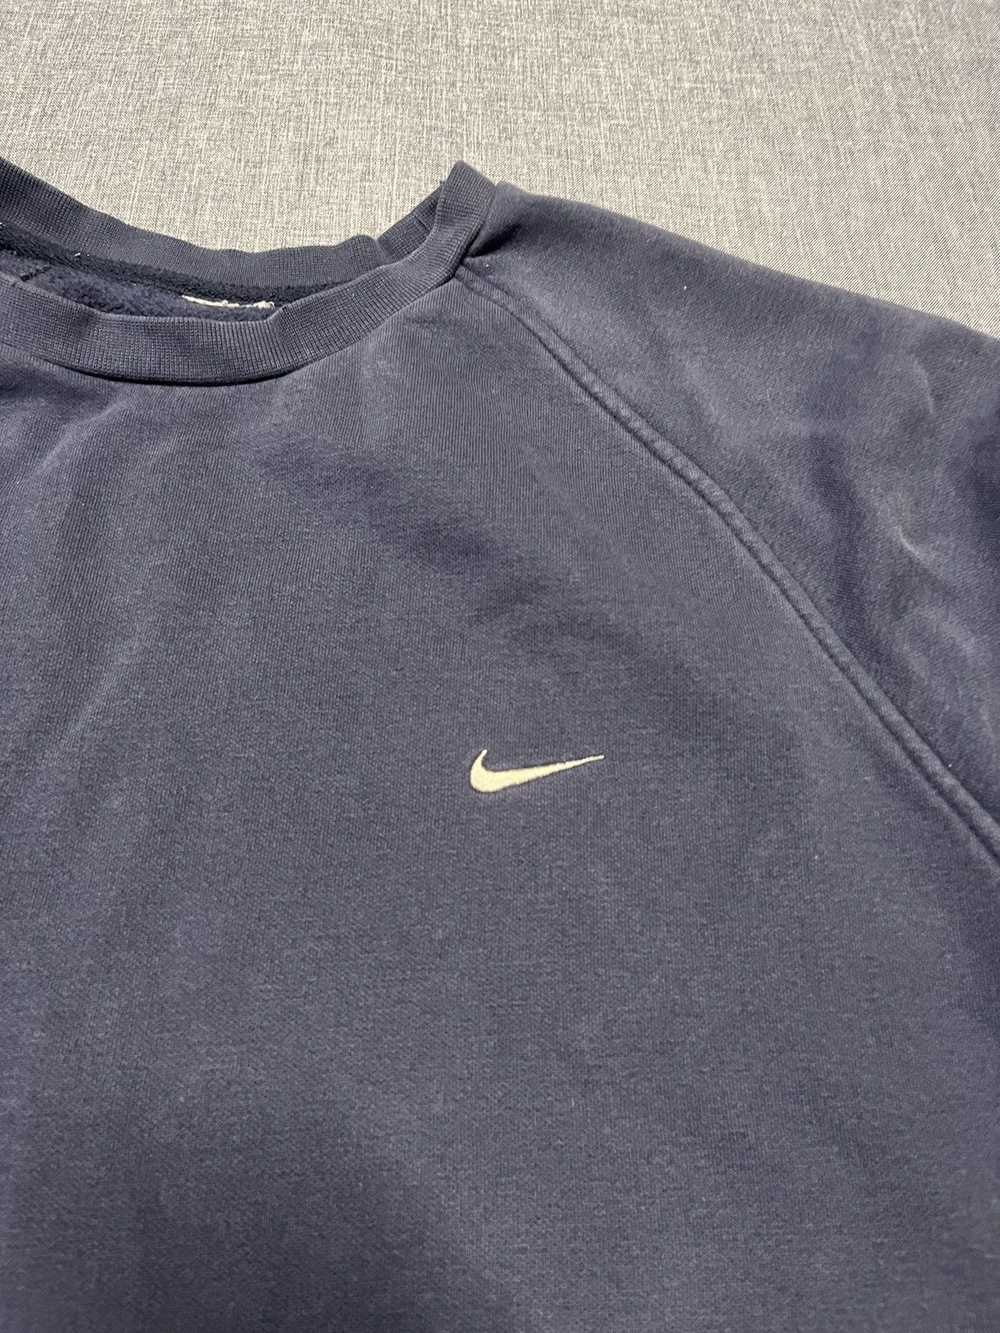 Nike × Vintage Vintage Nike y2k sweatshirt XL - image 2